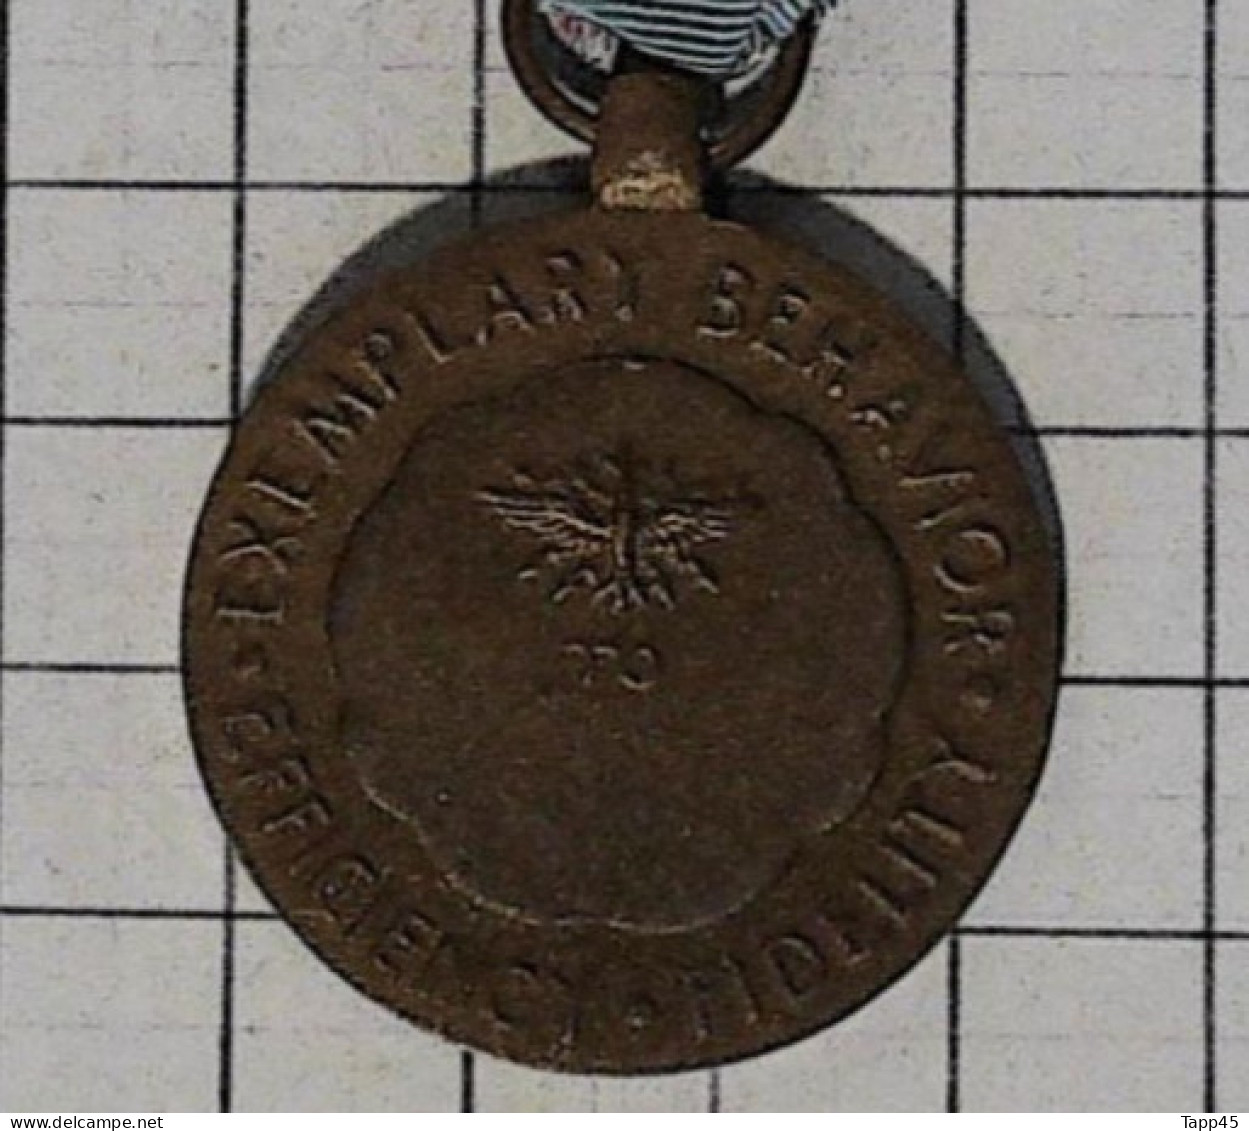 Médaille du service méritoire de la Réserve aérienne  Air Reserve Forces Meritorious Service Medal  > Réf:Cl USA P 1/4